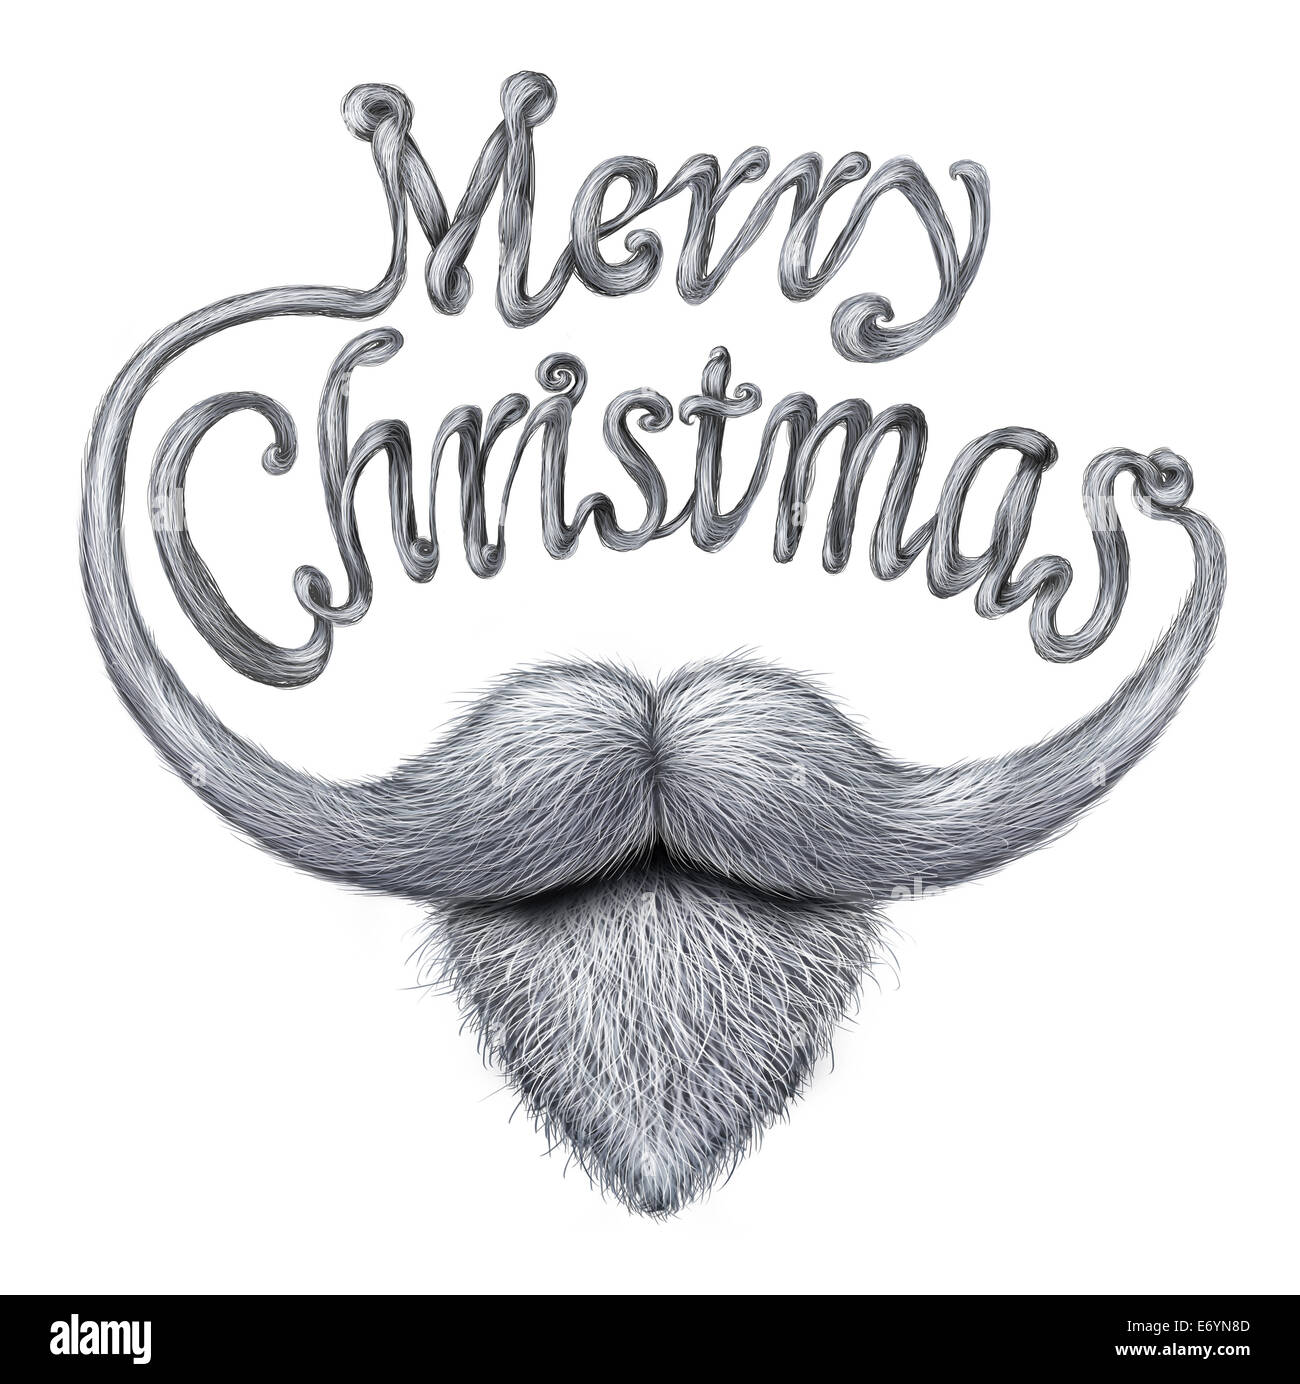 Frohe Weihnachten-Konzept als eine glückliche humorvolle Grußkartennachricht als Santa Klausel Bart und Schnurrbart mit langen Schnurrhaare geformt als geschriebener Text auf weißem Hintergrund. Stockfoto